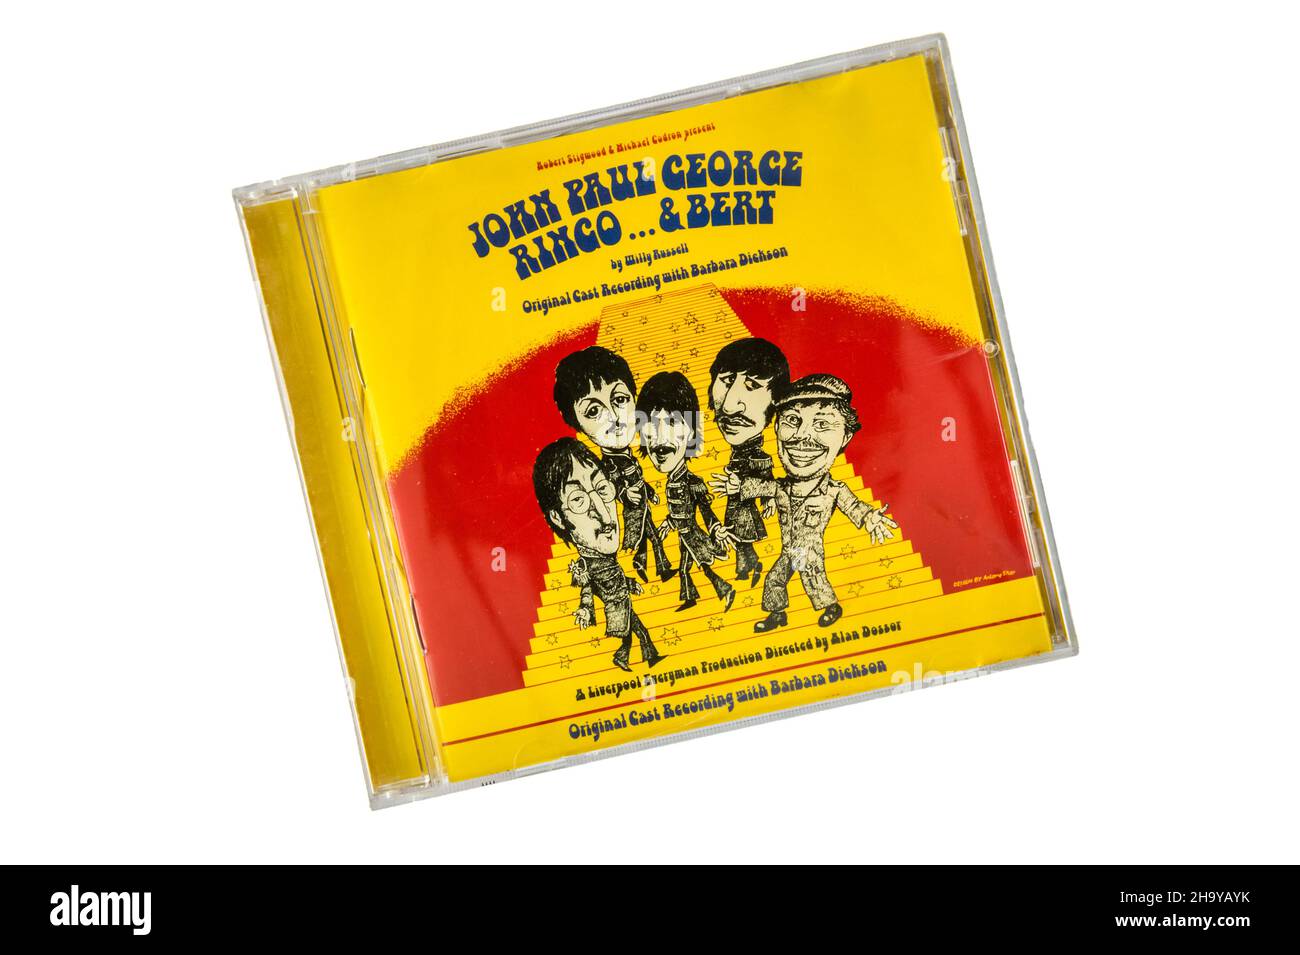 Originale cast CD di John Paul George Ringo ... & Bert il musical del 1974 di Willy Russell basato sulla storia dei Beatles. Copertina disegnata da Antony Sher Foto Stock